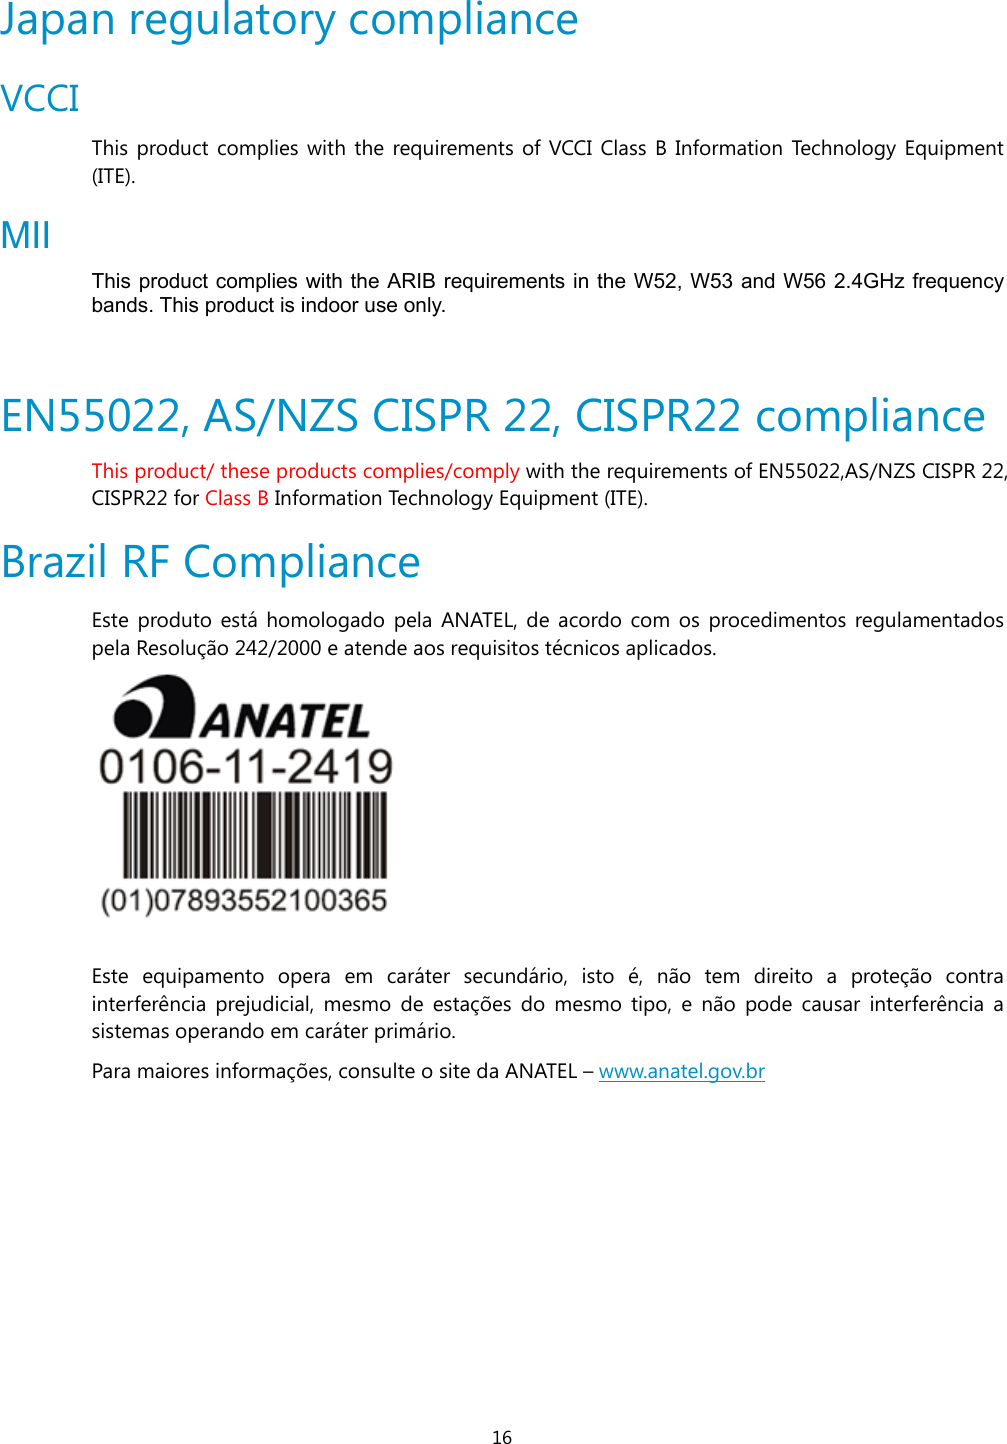 16 Japan regulatory compliance VCCI This product complies with the requirements of VCCI Class B Information Technology Equipment (ITE).  MII This product complies with the ARIB requirements in the W52, W53 and W56 2.4GHz frequency bands. This product is indoor use only.  EN55022, AS/NZS CISPR 22, CISPR22 compliance This product/ these products complies/comply with the requirements of EN55022,AS/NZS CISPR 22, CISPR22 for Class B Information Technology Equipment (ITE).  Brazil RF Compliance  Este produto está homologado pela ANATEL, de acordo com os procedimentos regulamentados pela Resolução 242/2000 e atende aos requisitos técnicos aplicados.   Este equipamento opera em caráter secundário, isto é, não tem direito a proteção contra interferência prejudicial, mesmo de estações do mesmo tipo, e não pode causar interferência a sistemas operando em caráter primário. Para maiores informações, consulte o site da ANATEL – www.anatel.gov.br 